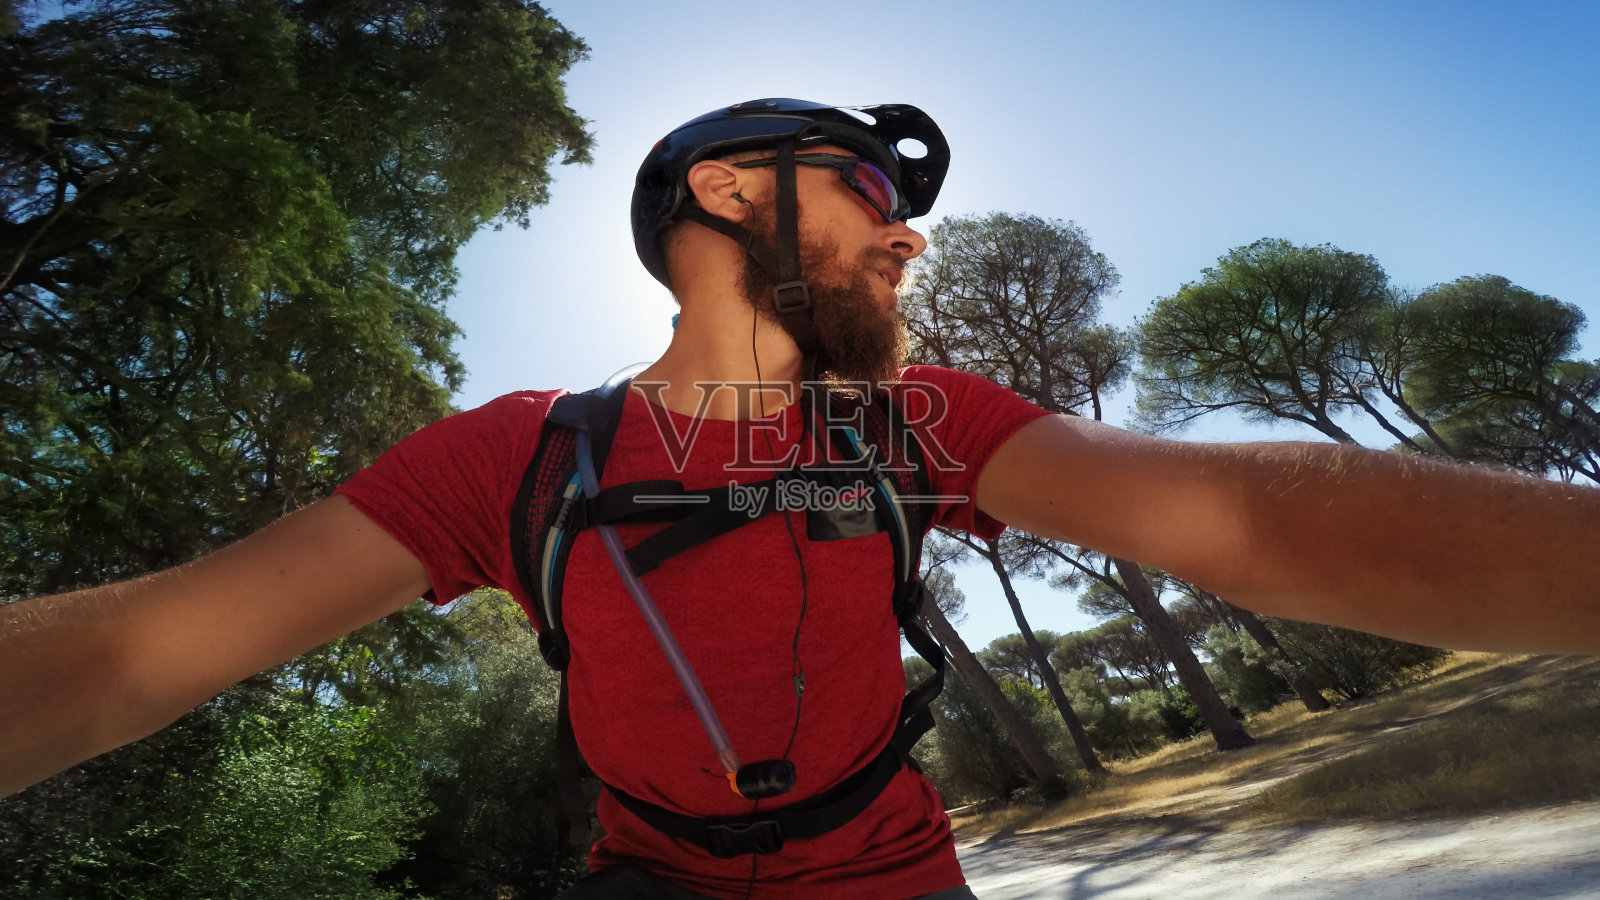 自画像与行动摄像头:骑一辆山地车自行车照片摄影图片